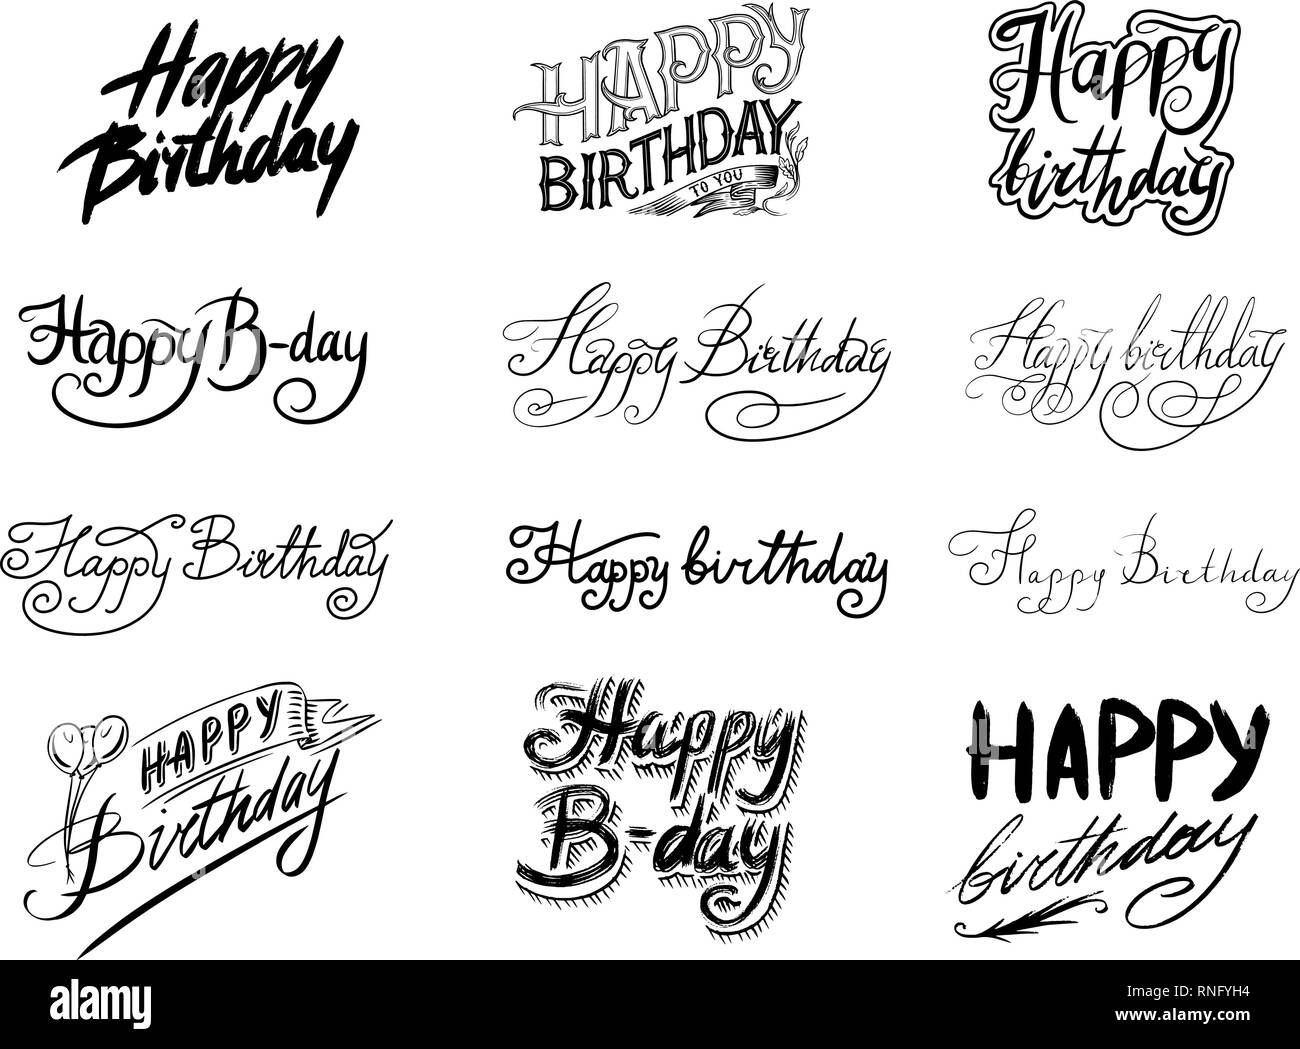 Scritta da colorare: Buon Compleanno  Disegno di compleanno, Buon  compleanno, Buon compleanno calligrafia